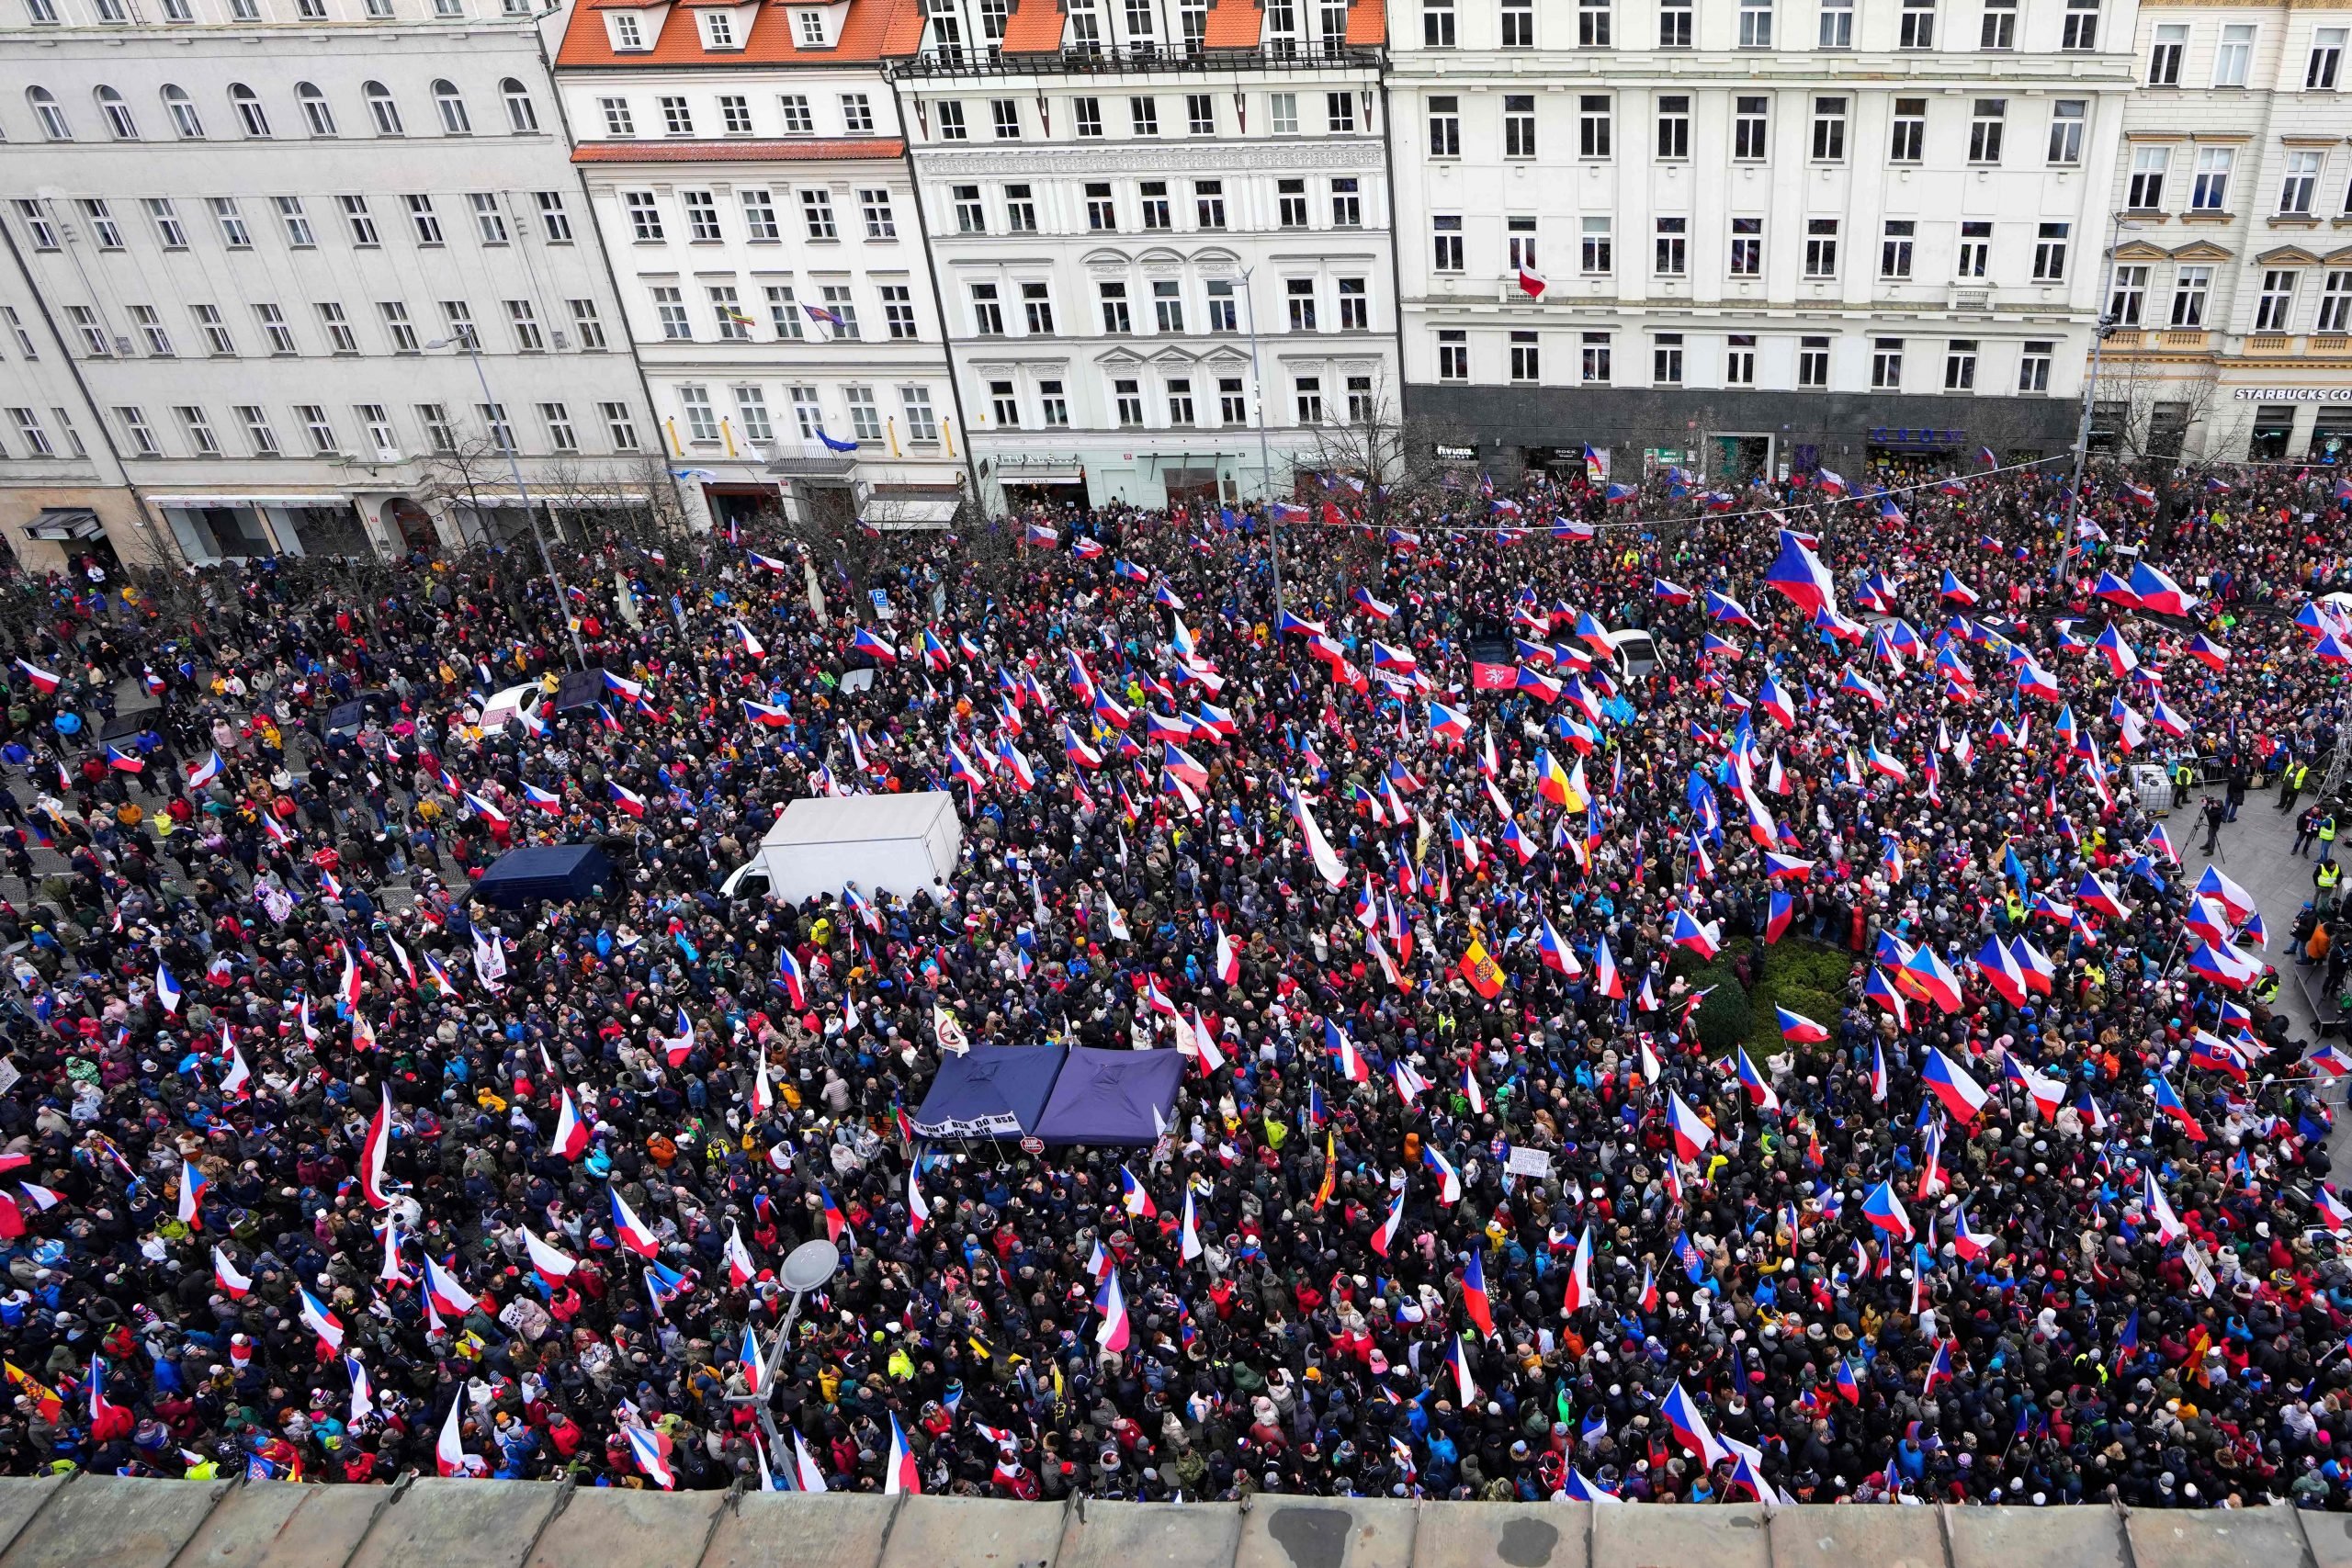 捷克布拉格数千人示威 不满高通胀导致贫穷